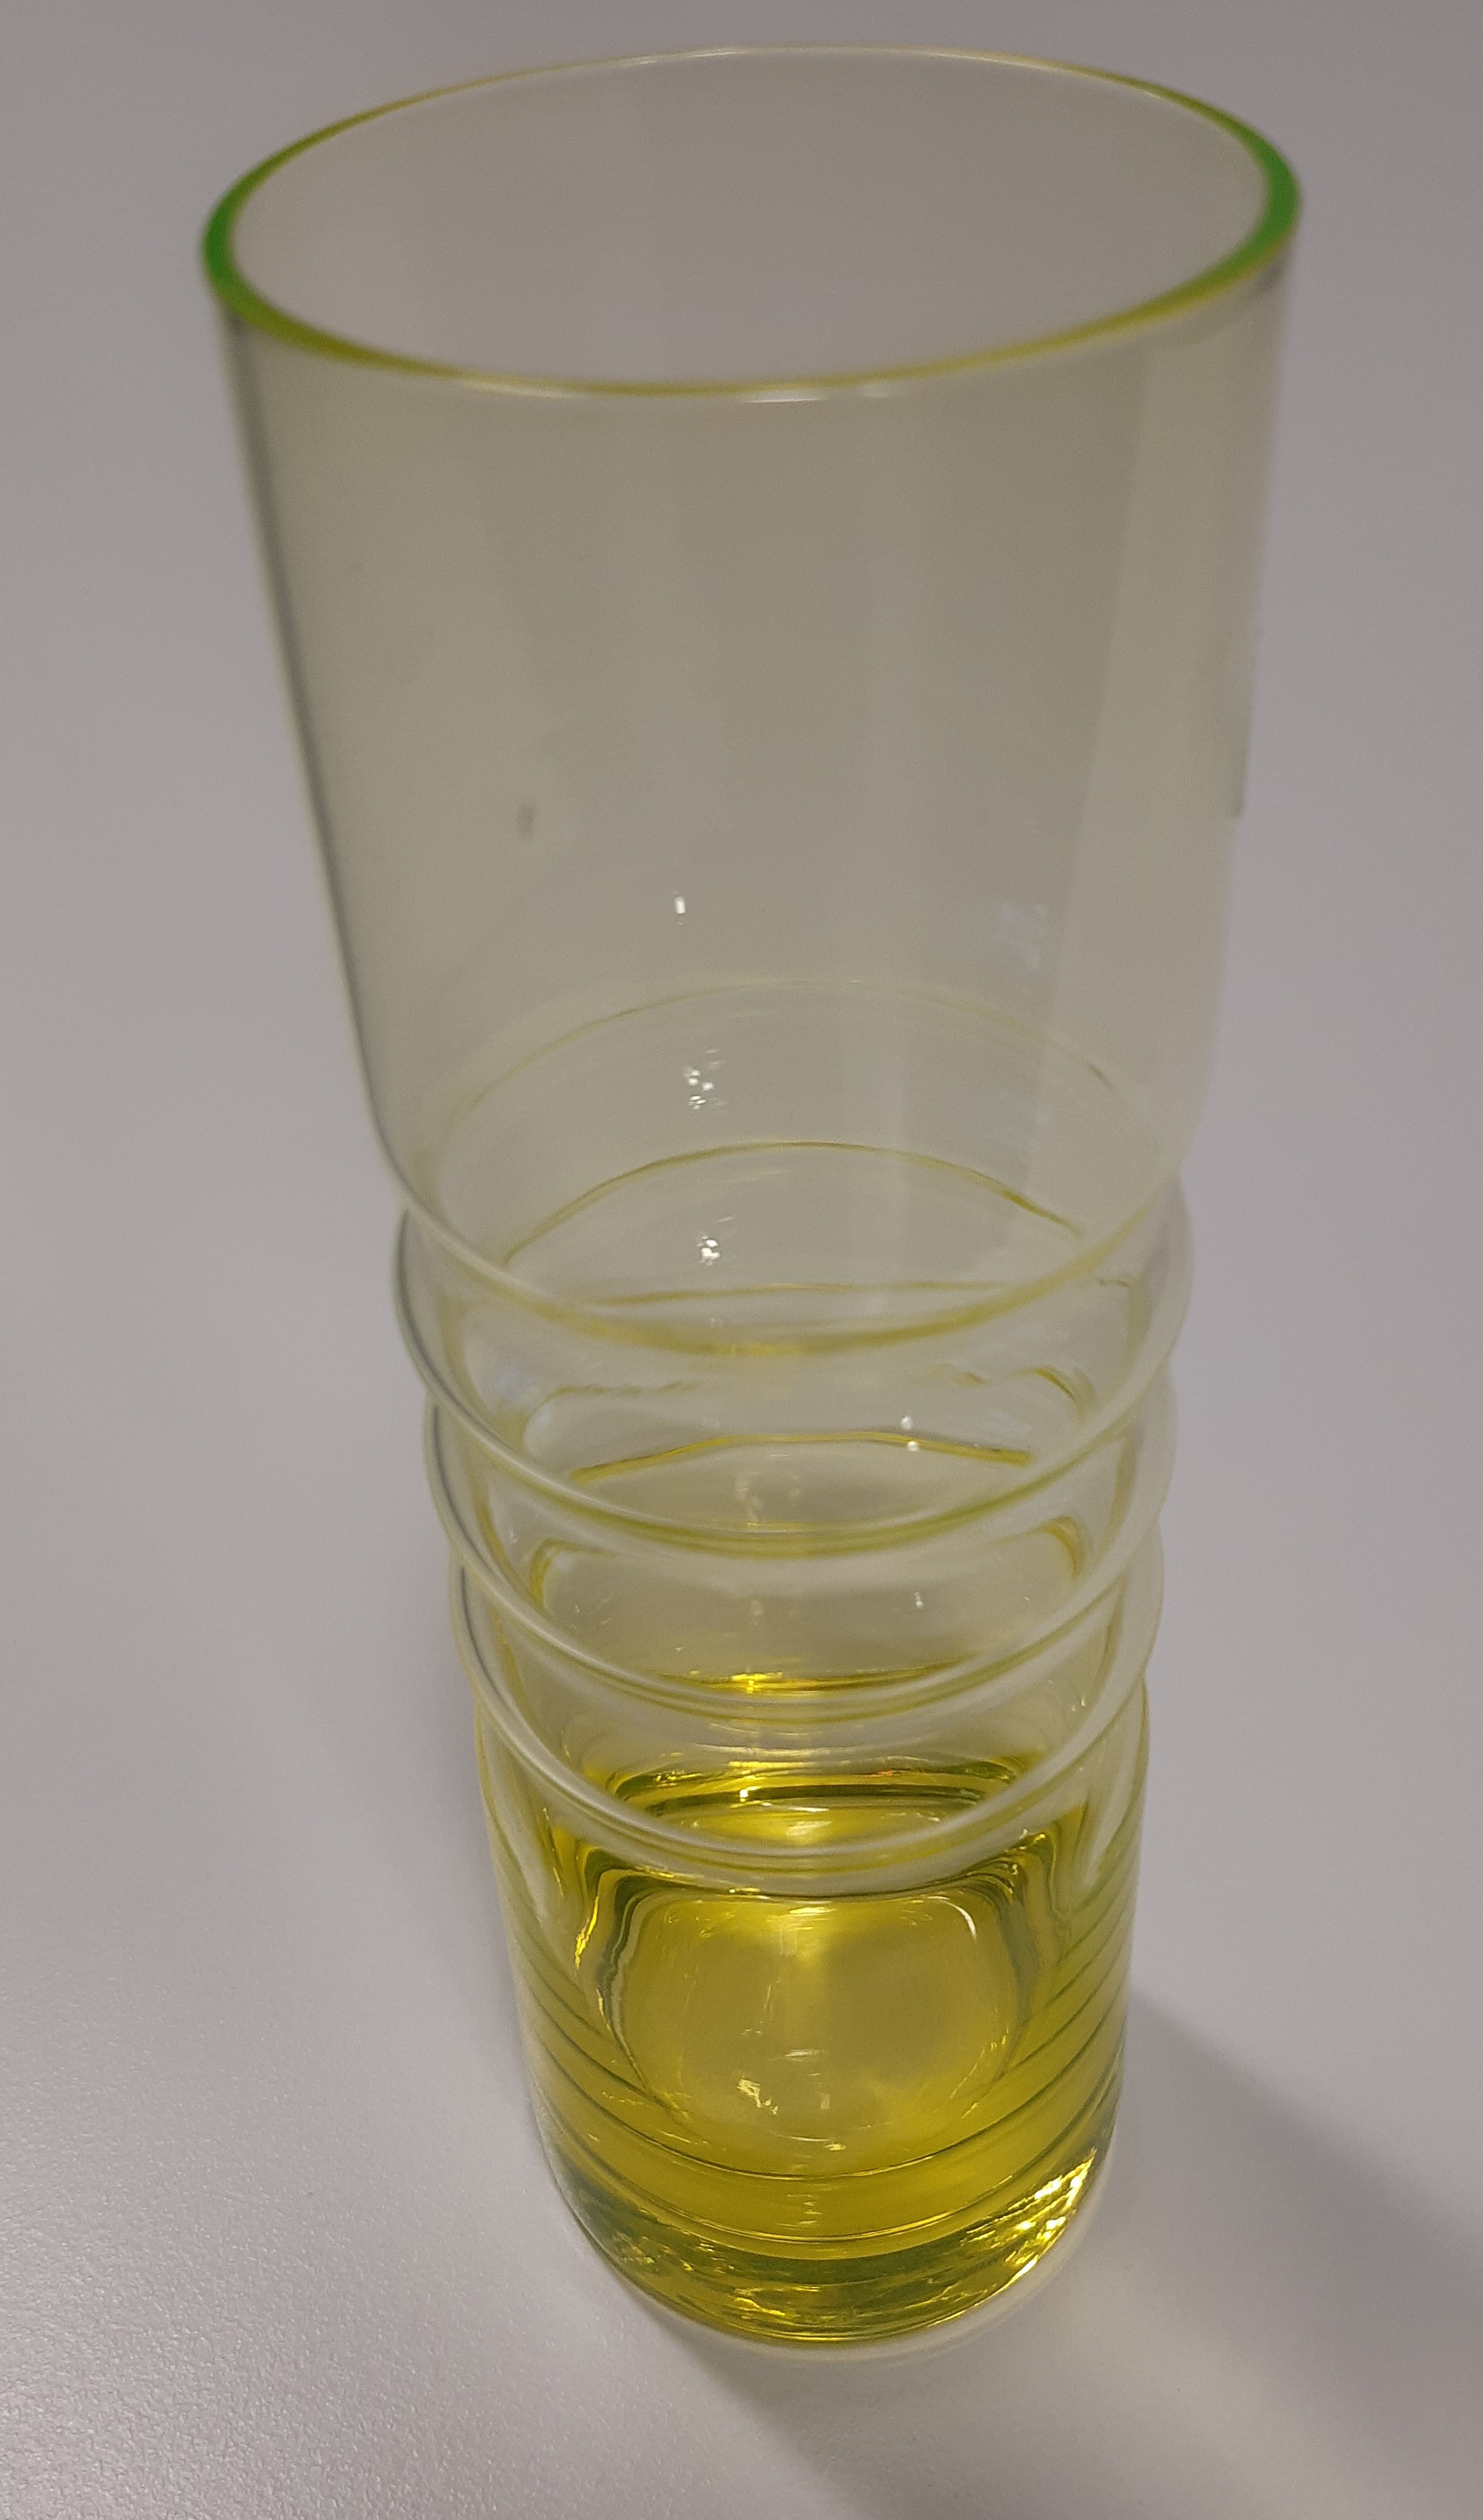 En keramiktallrik tillverkad i Finland på 1960-talet, vars ytfärg har erhållits genom att använda uranhaltigt salt i glasyren. Glasvasens gula färg kommer från uran. Uranglas skimrar när det belyses med UV-ljus.